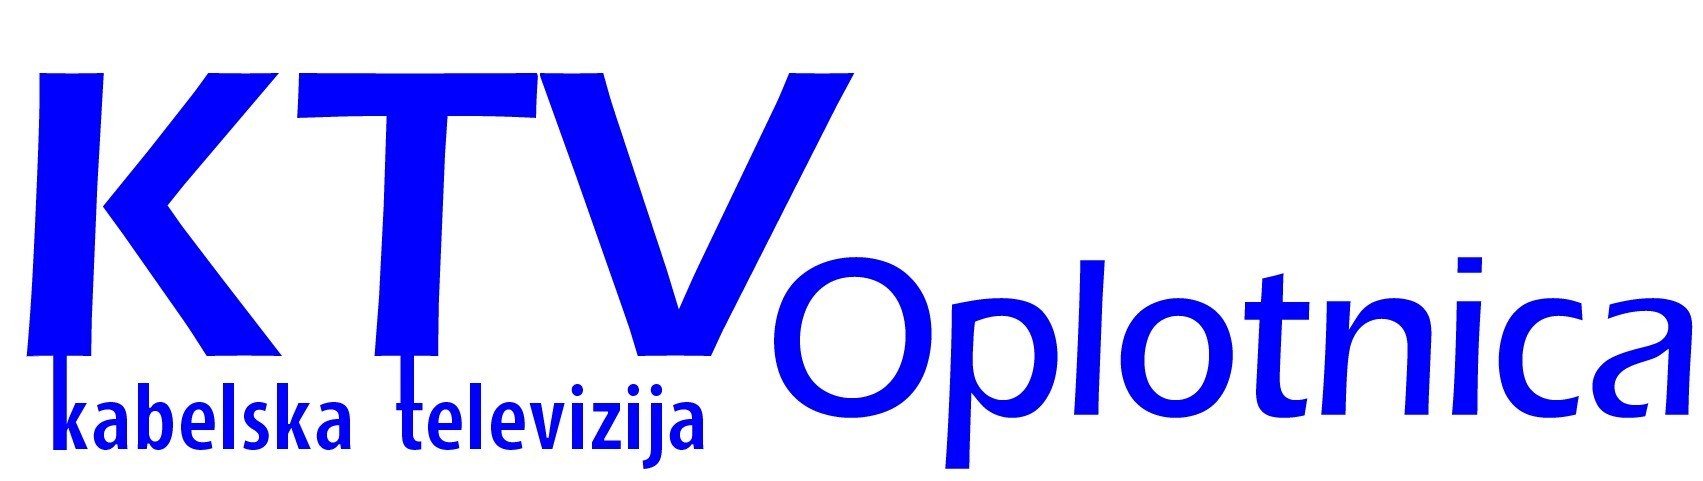 logo_ktv_oplotnica